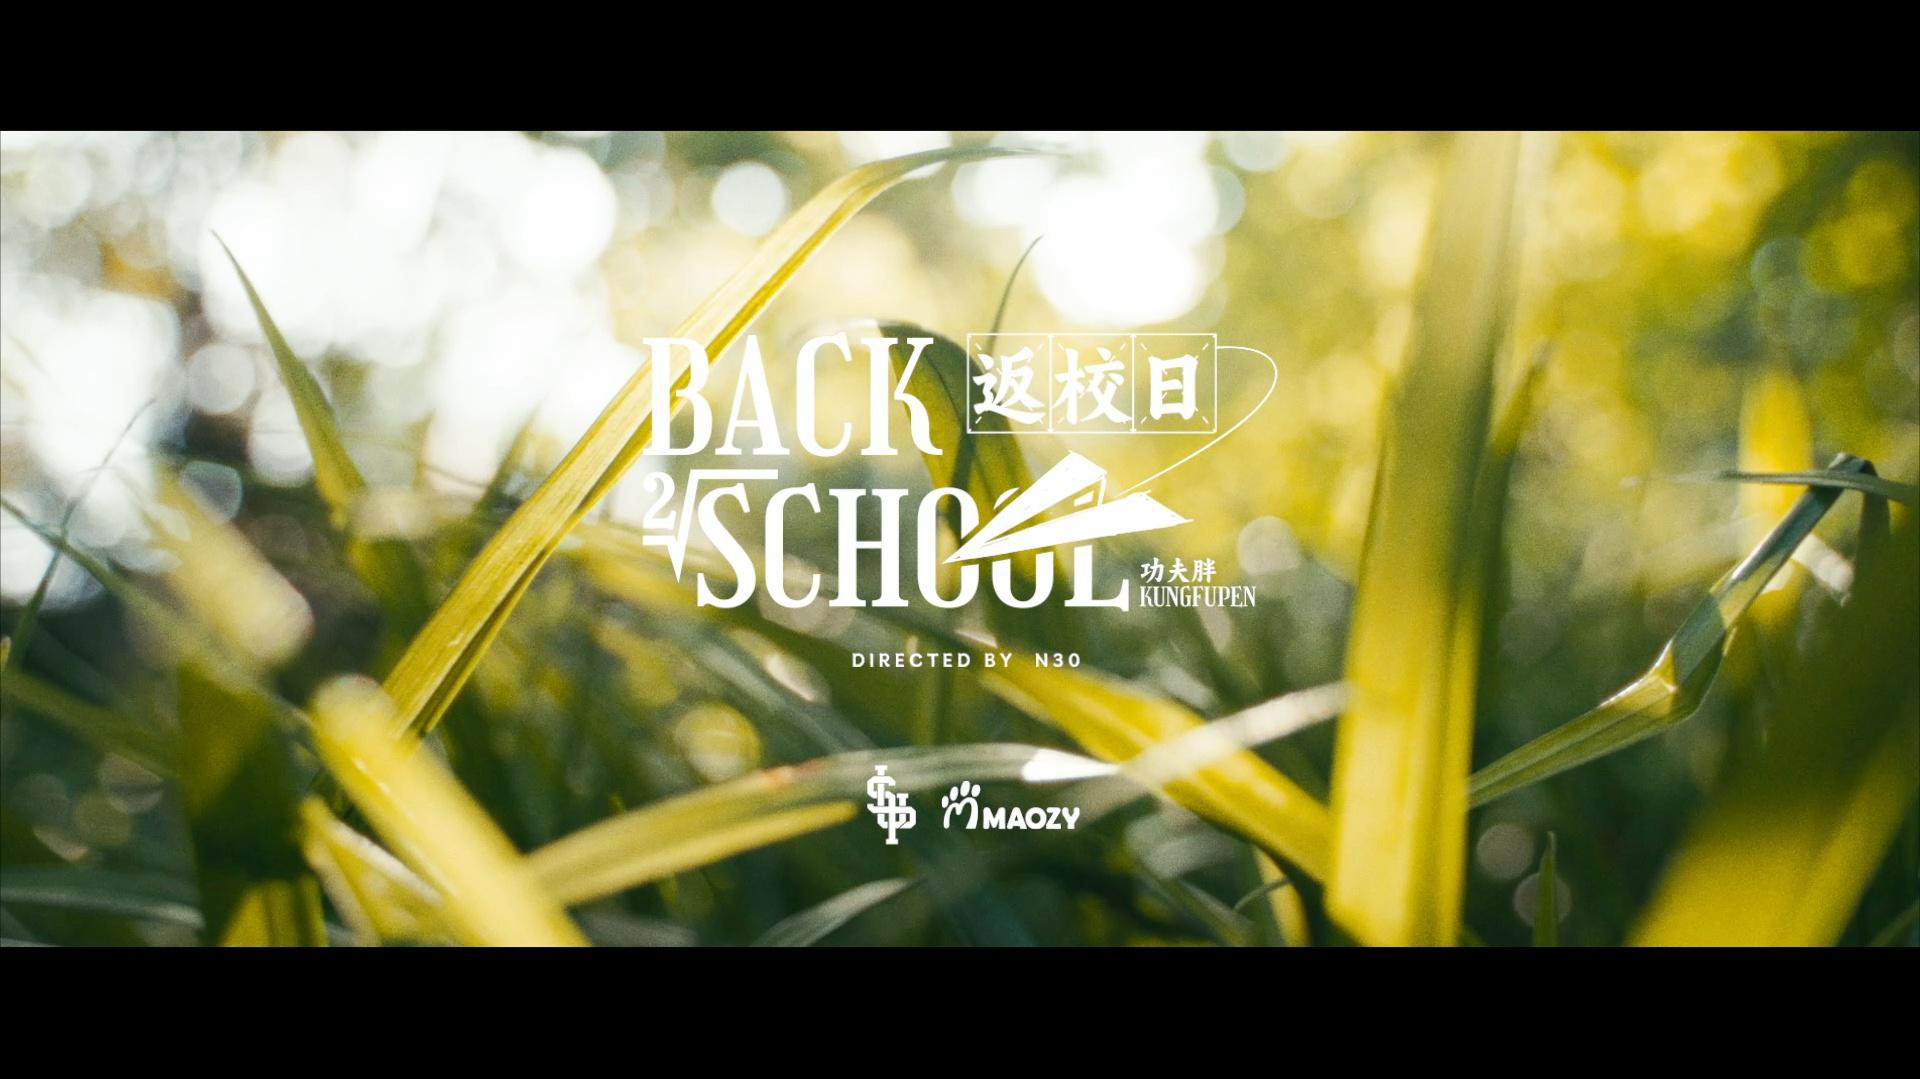 功夫胖KungFuPen - BACK TO SCHOOL（返校日）「Official Music Video」